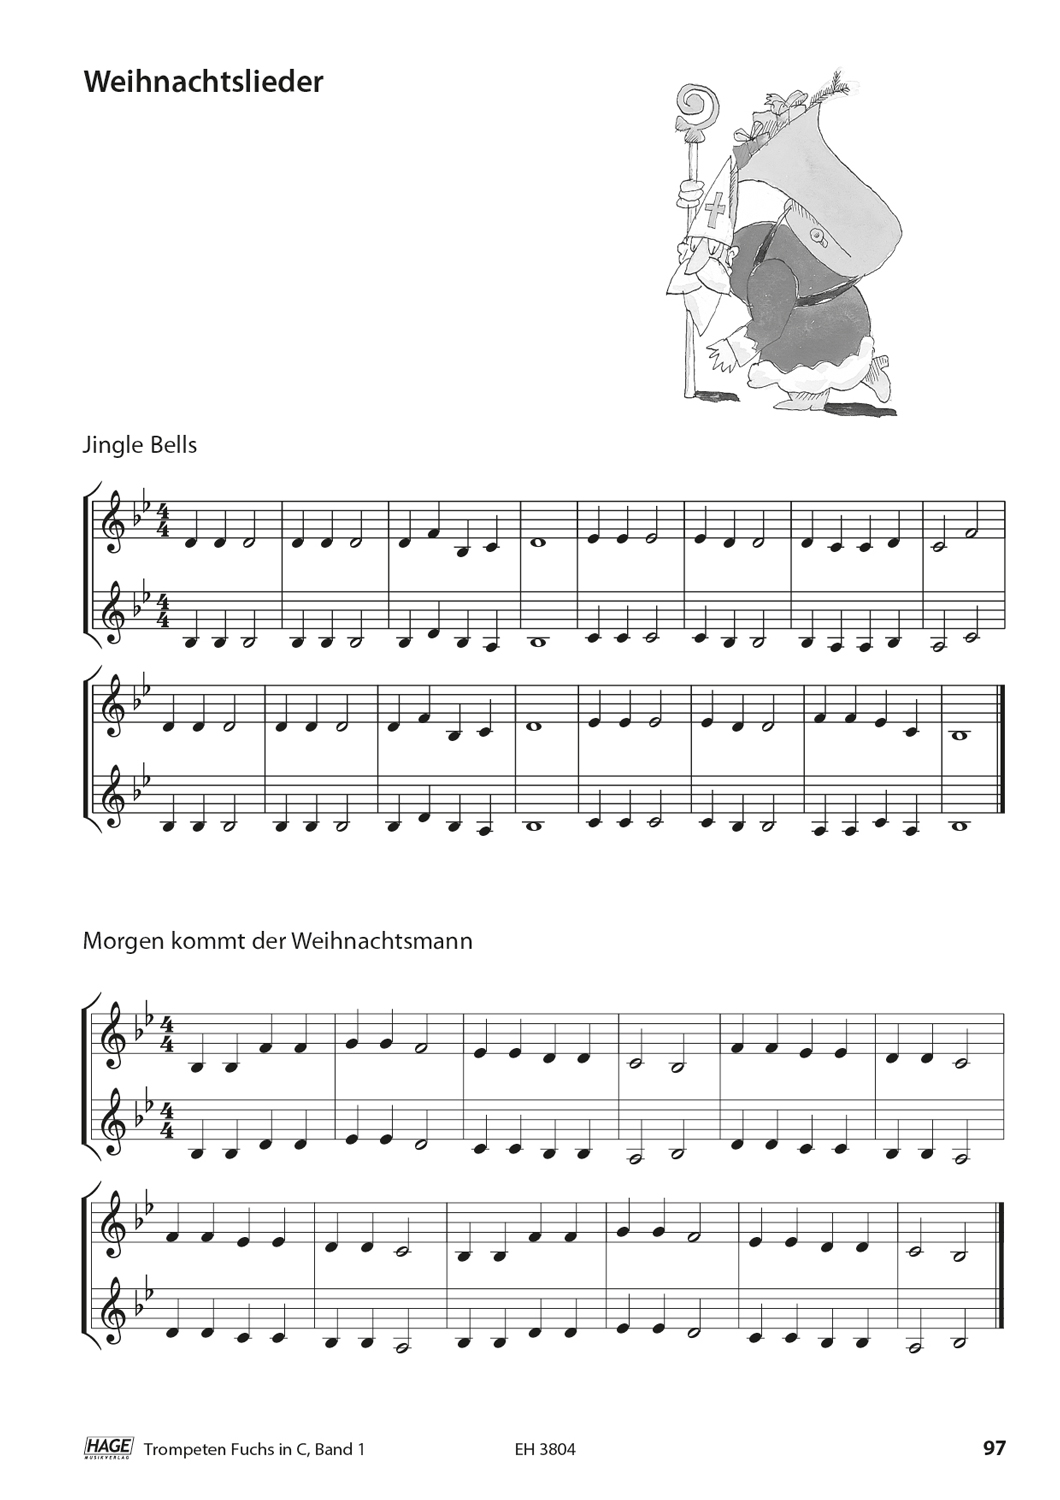 Trompeten Fuchs Band 1 in C für Posaunenchor Seiten 10